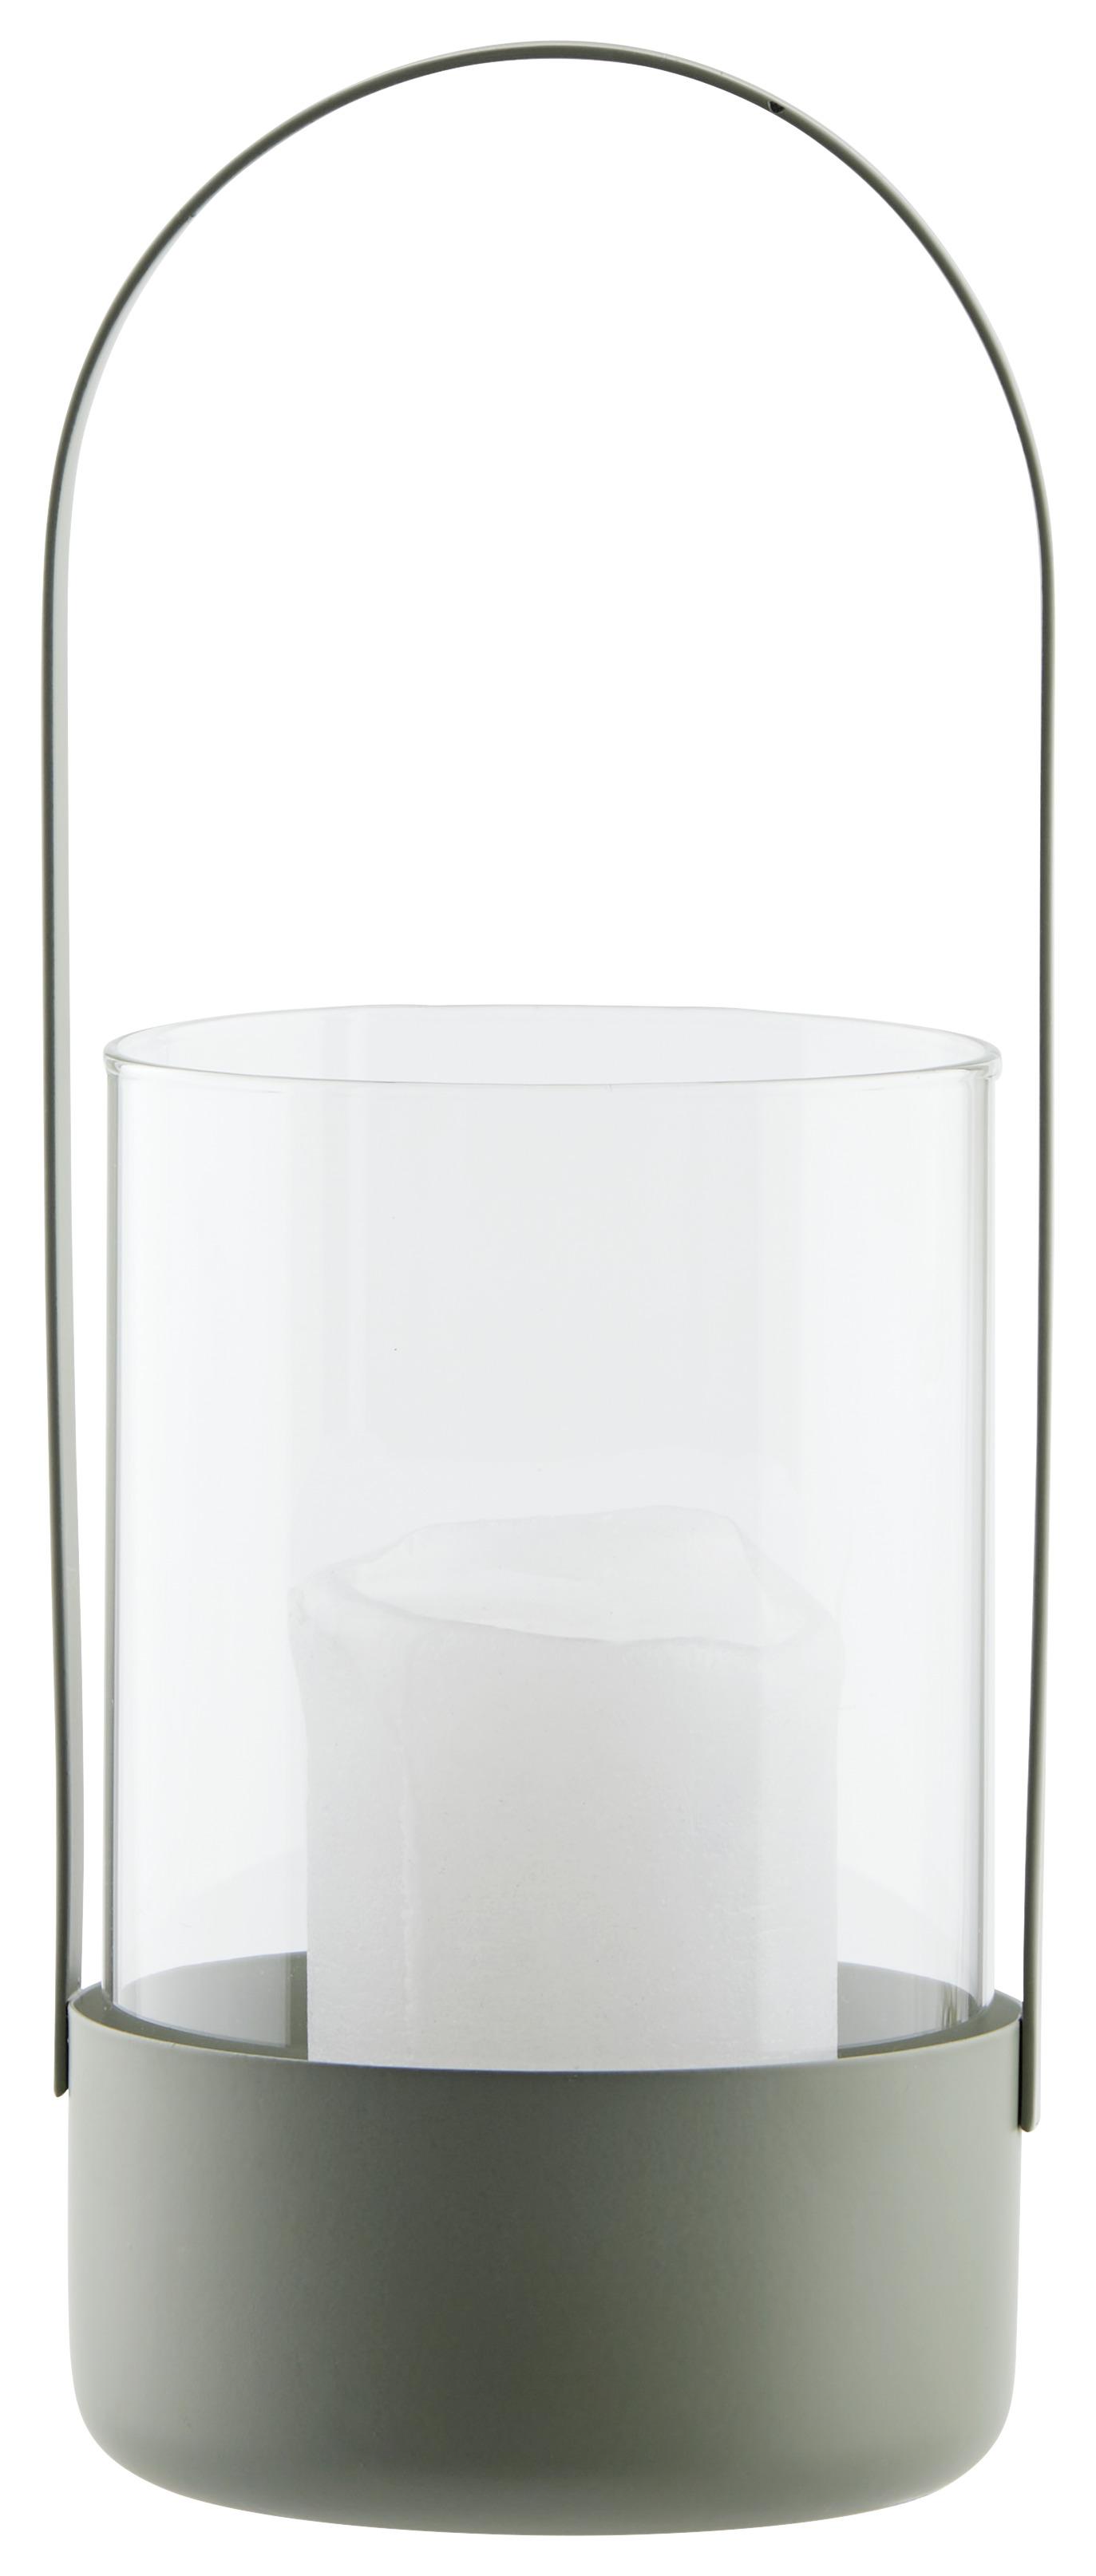 Windlicht Copa in Grün - Grün, Glas/Metall (12,2/30cm) - Modern Living